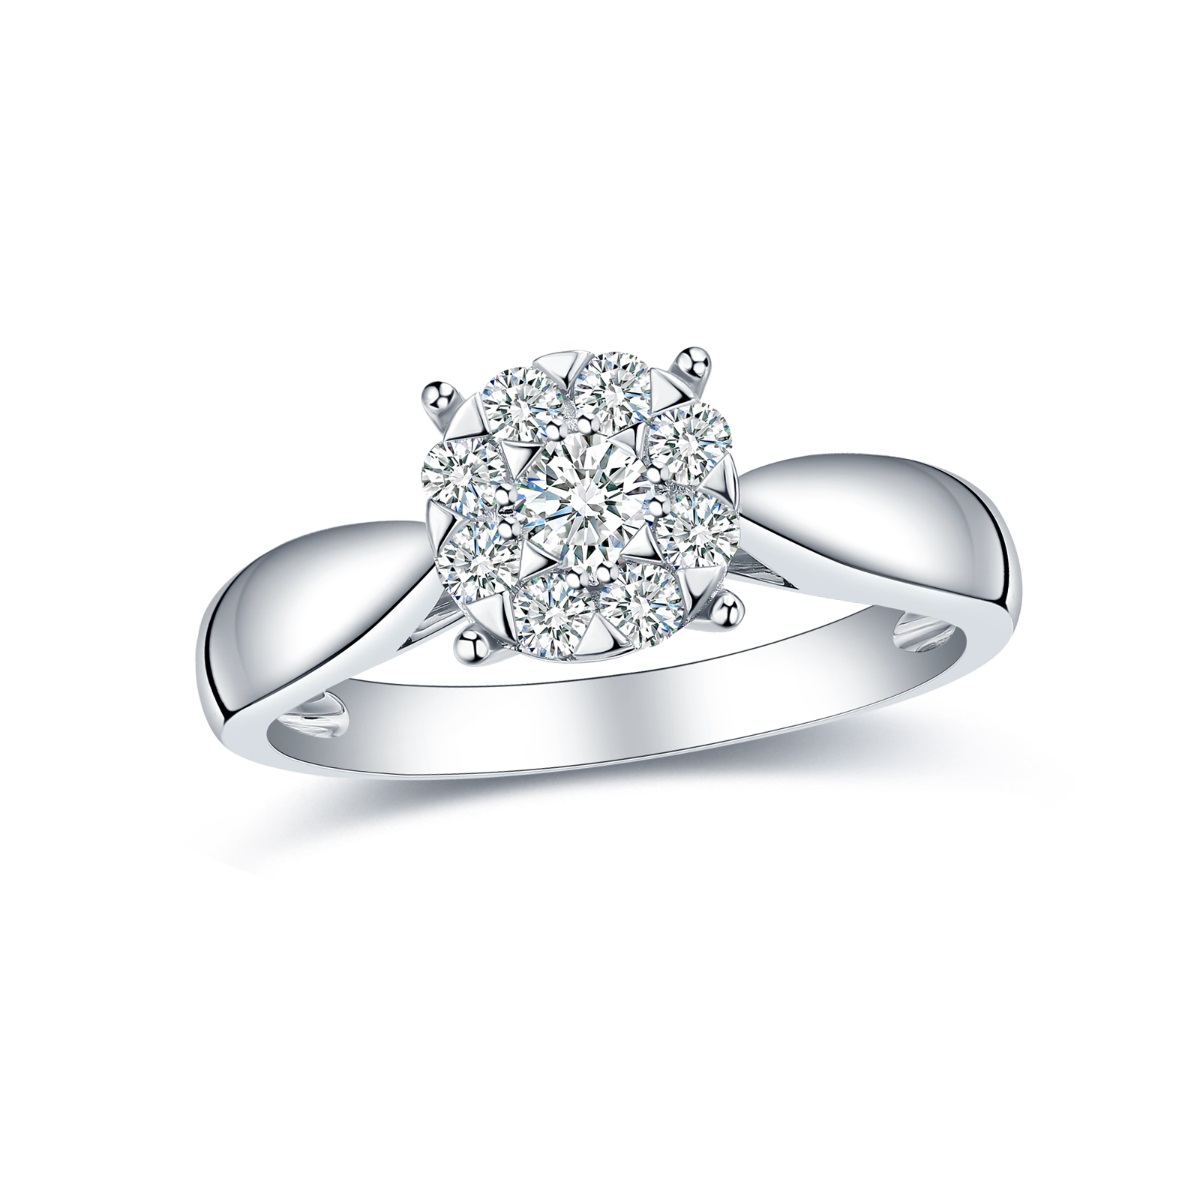 R35537WHT – 18K White Gold Diamond Ring, 0.43 TCW